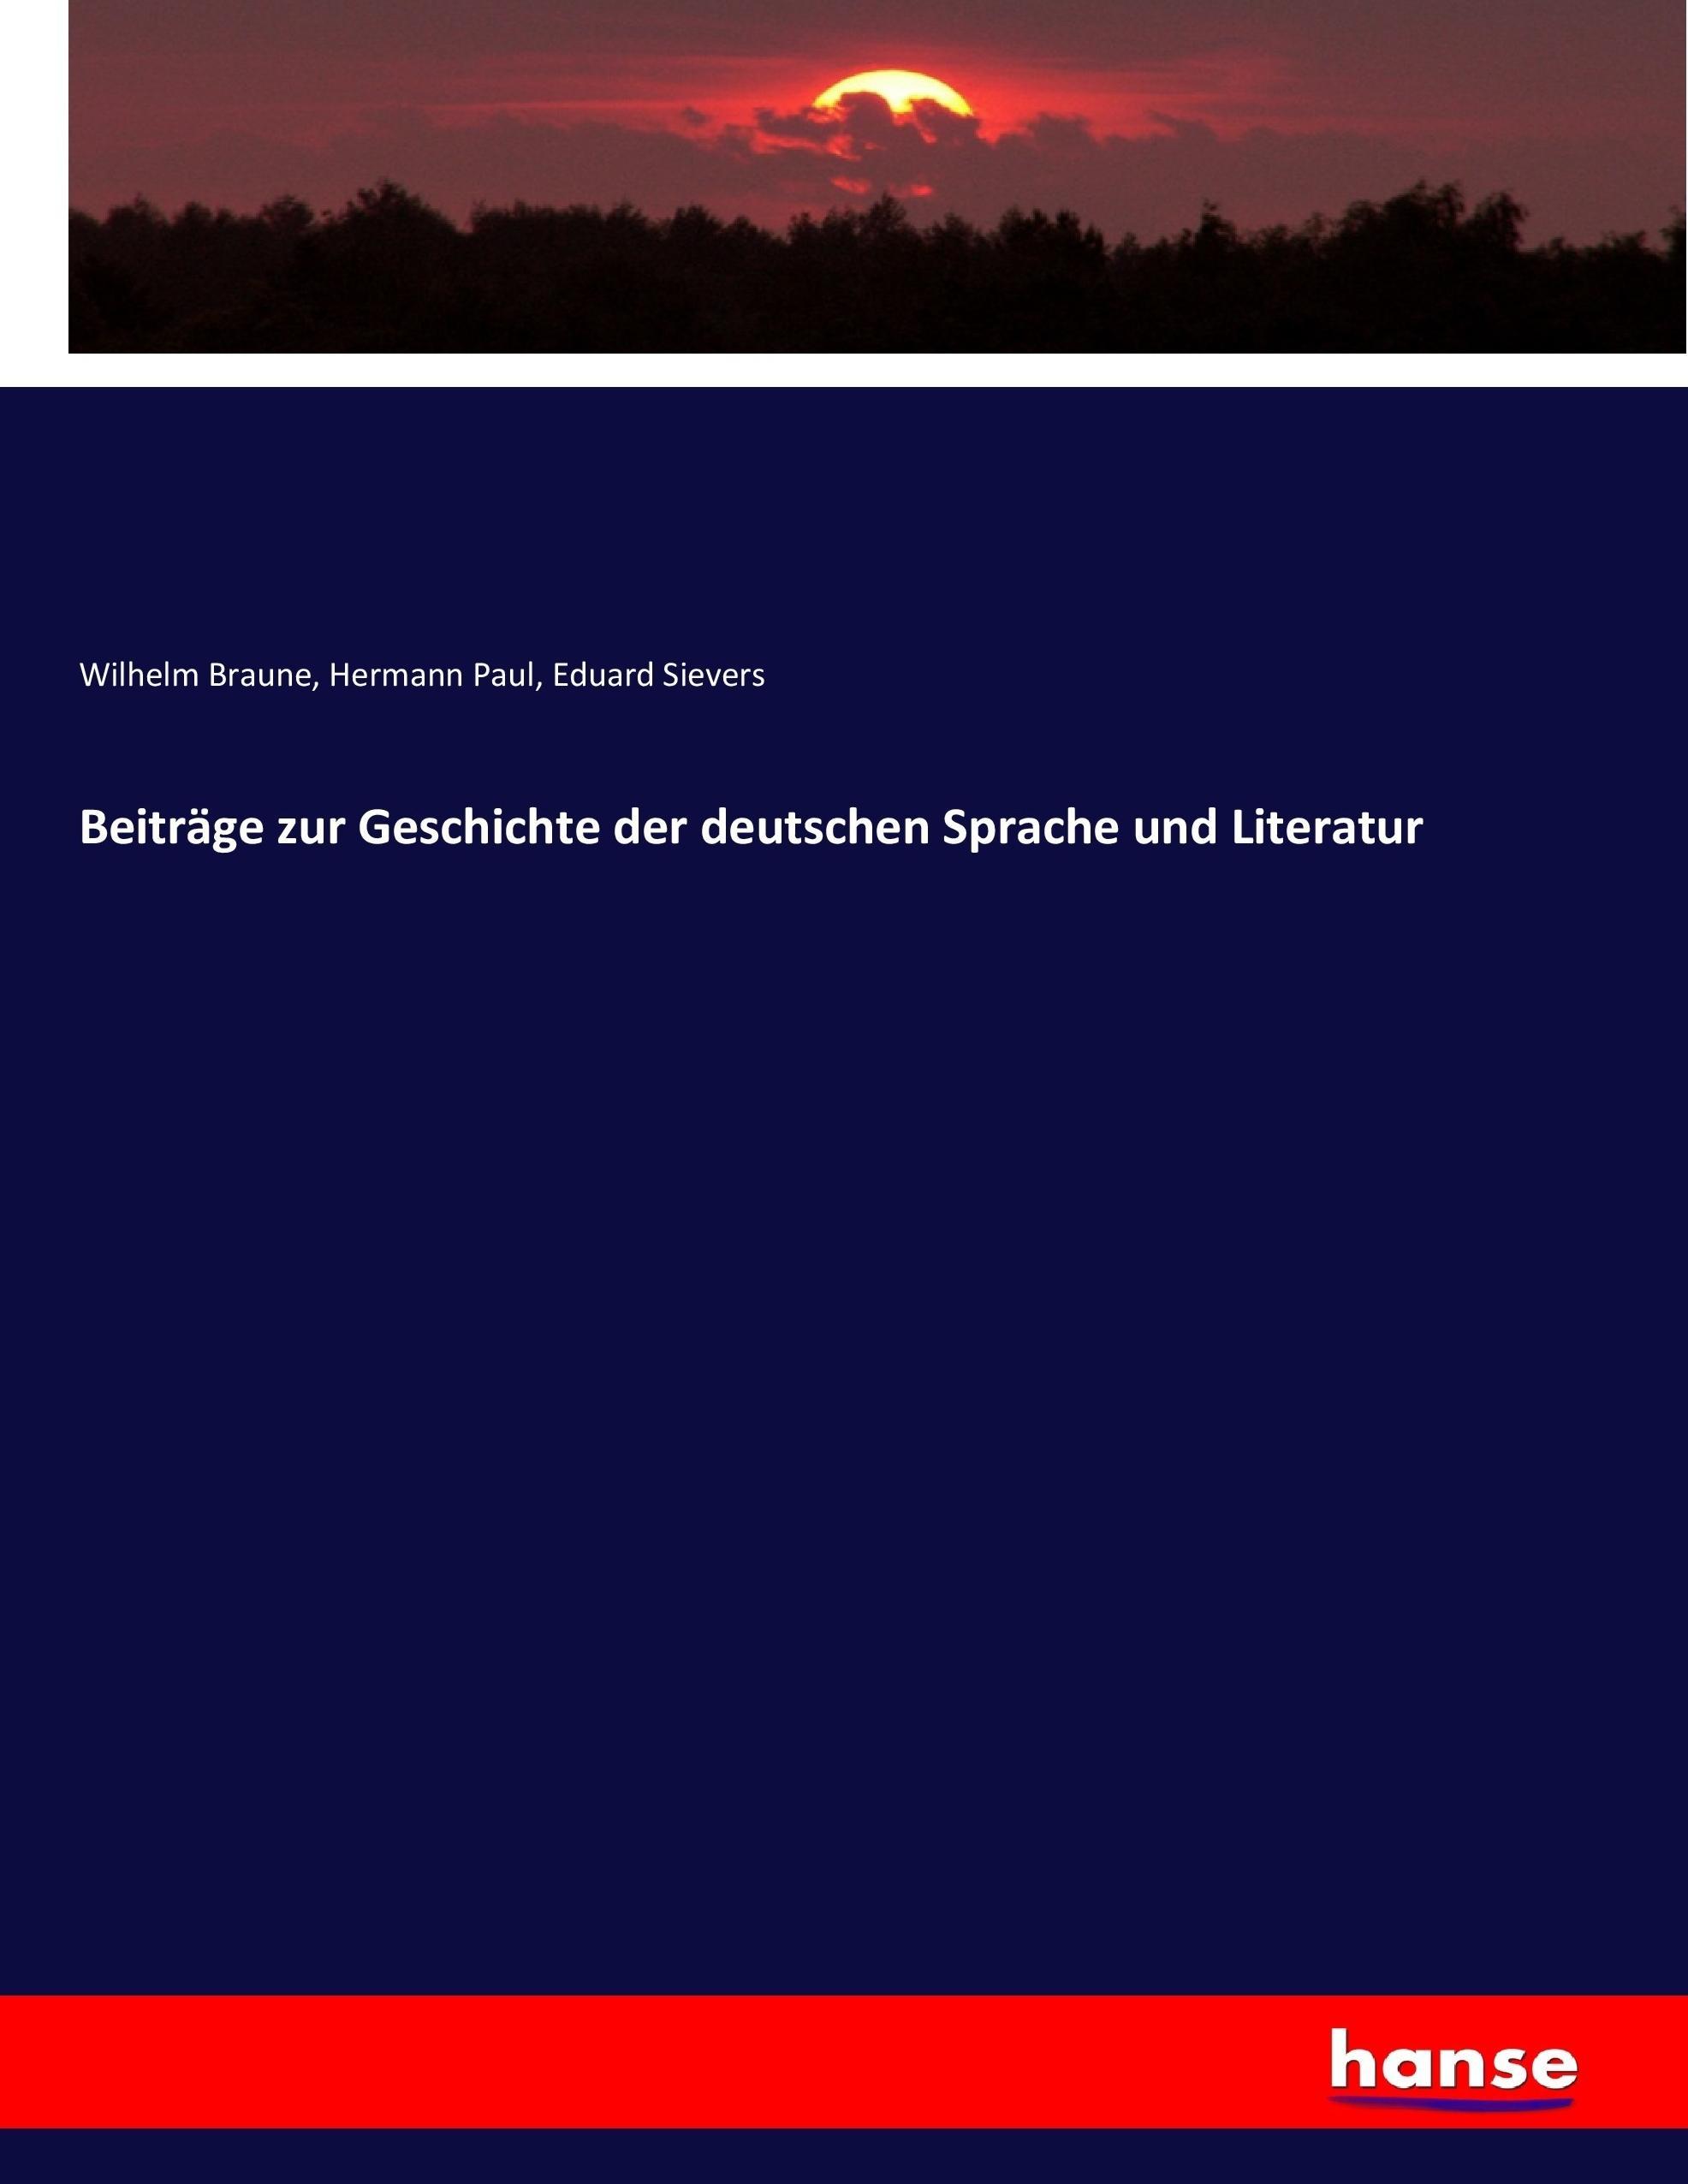 Beitraege zur Geschichte der deutschen Sprache und Literatur - Braune, Wilhelm Paul, Hermann Sievers, Eduard